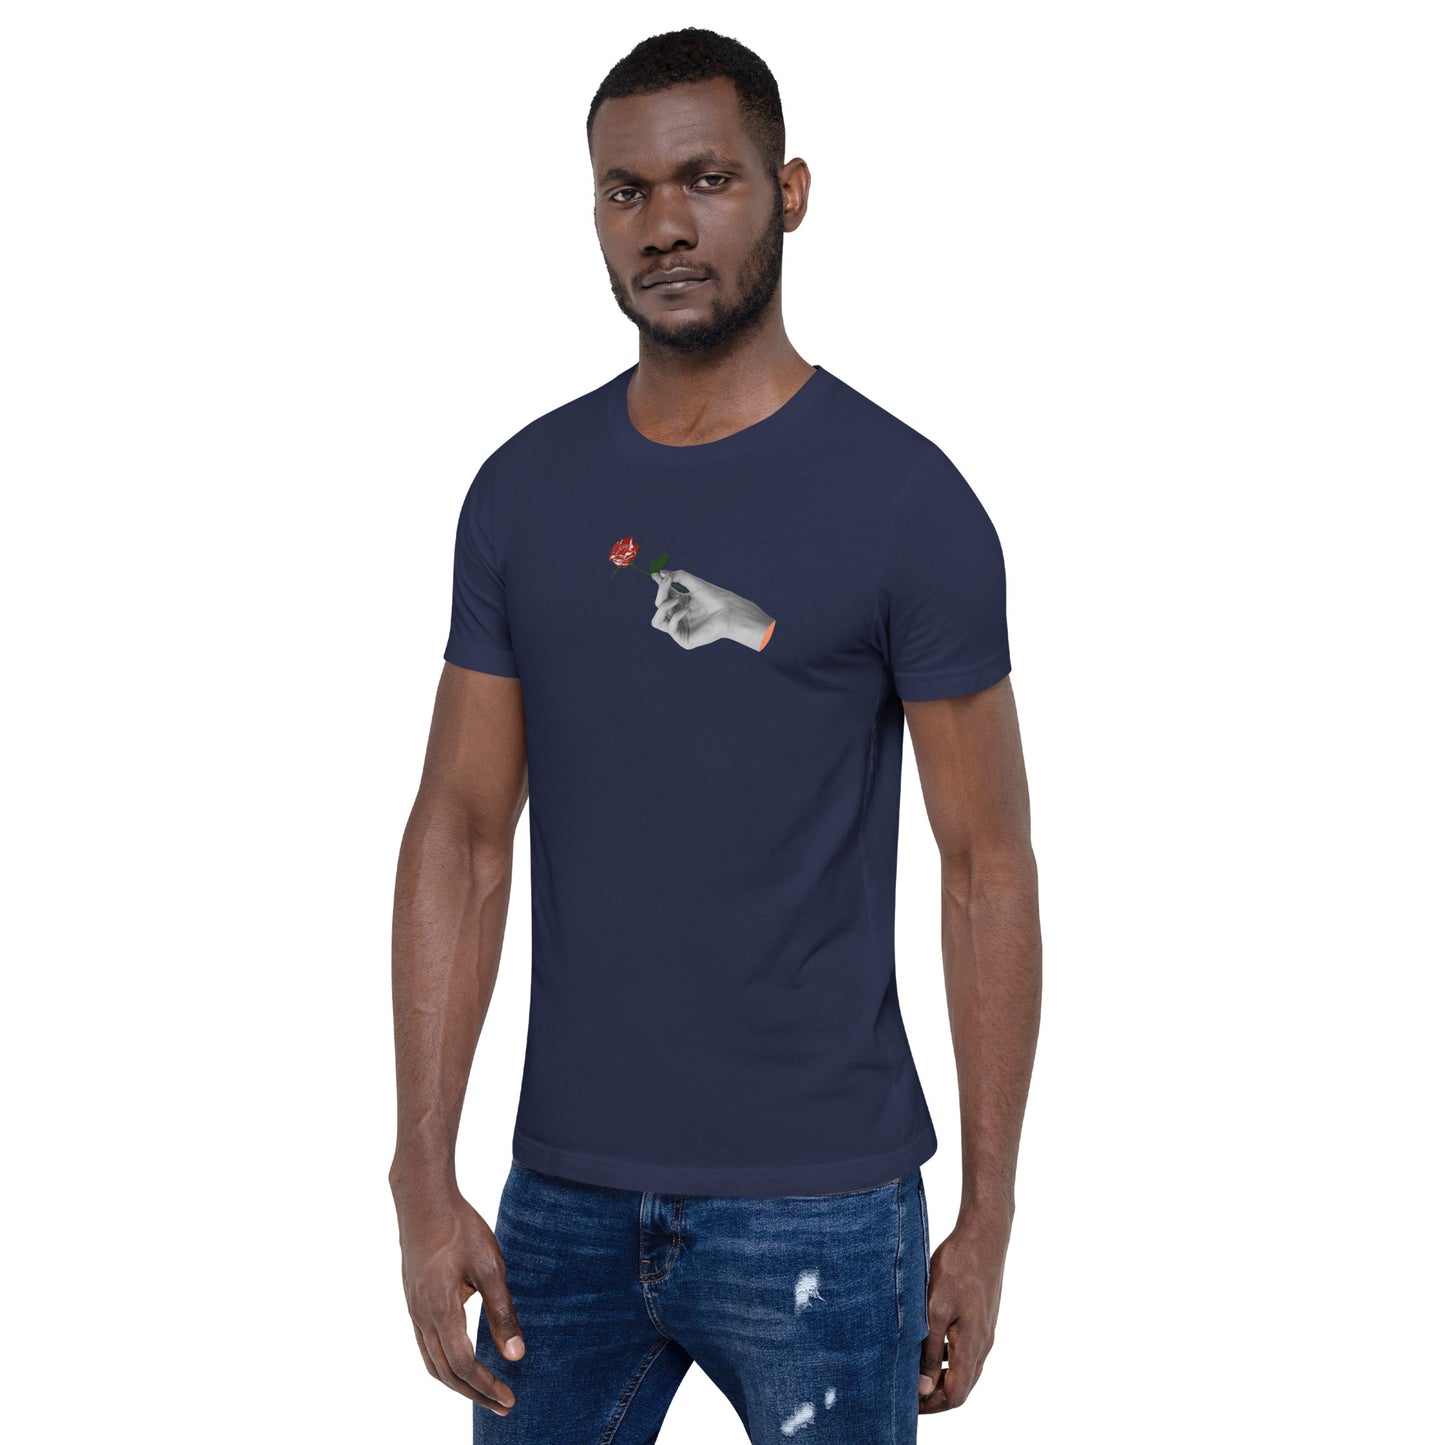 Adonis-Creations - Men's Simple Digital Print T-Shirt